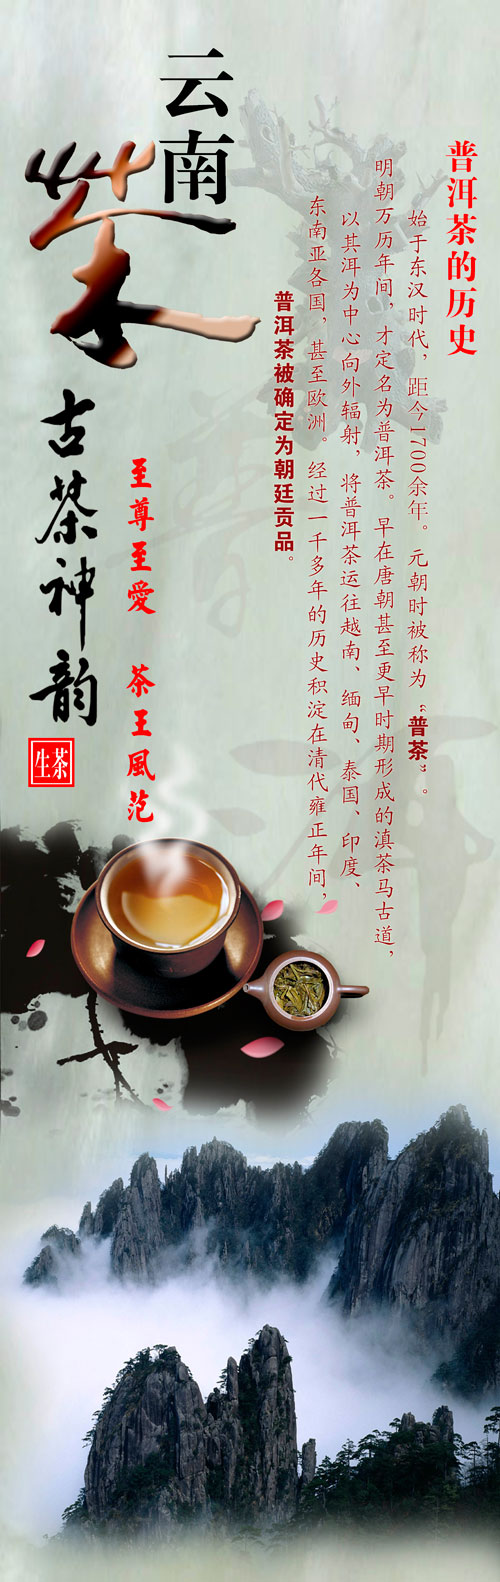  茶文化图片素材